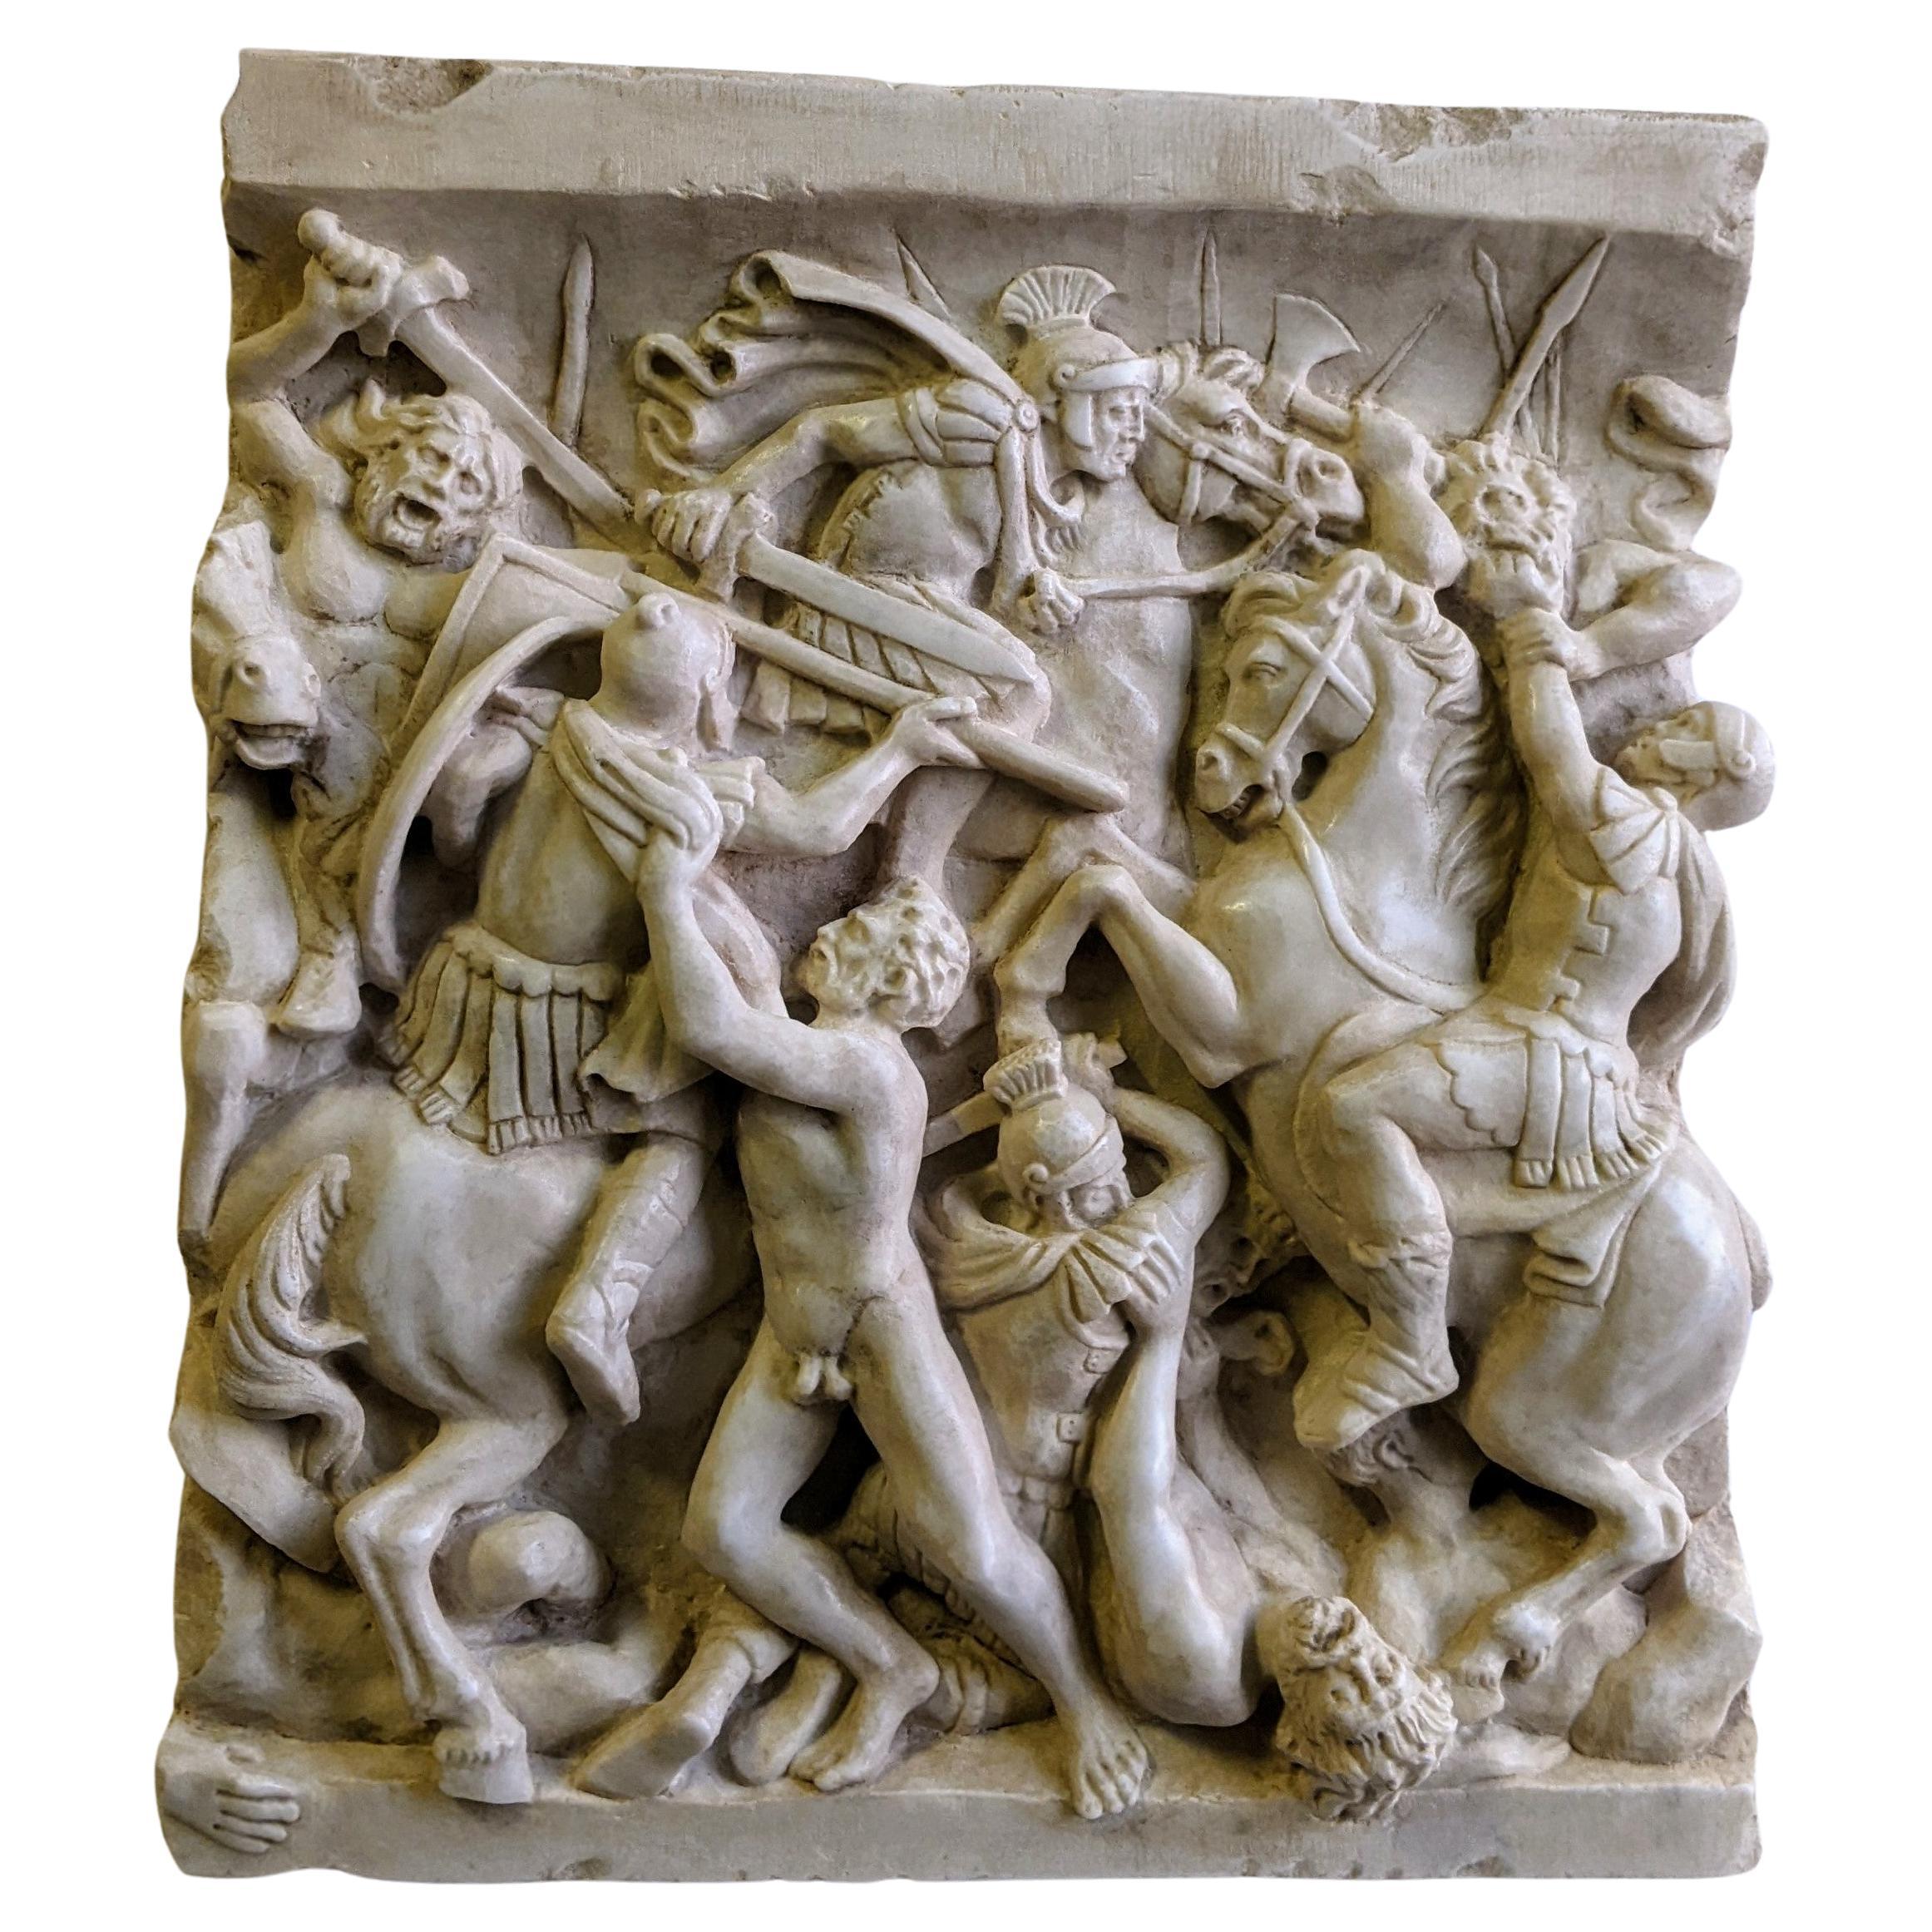 Altorilievo (Rahmen), di battaglia romana su Marmo Bianco di Carrara